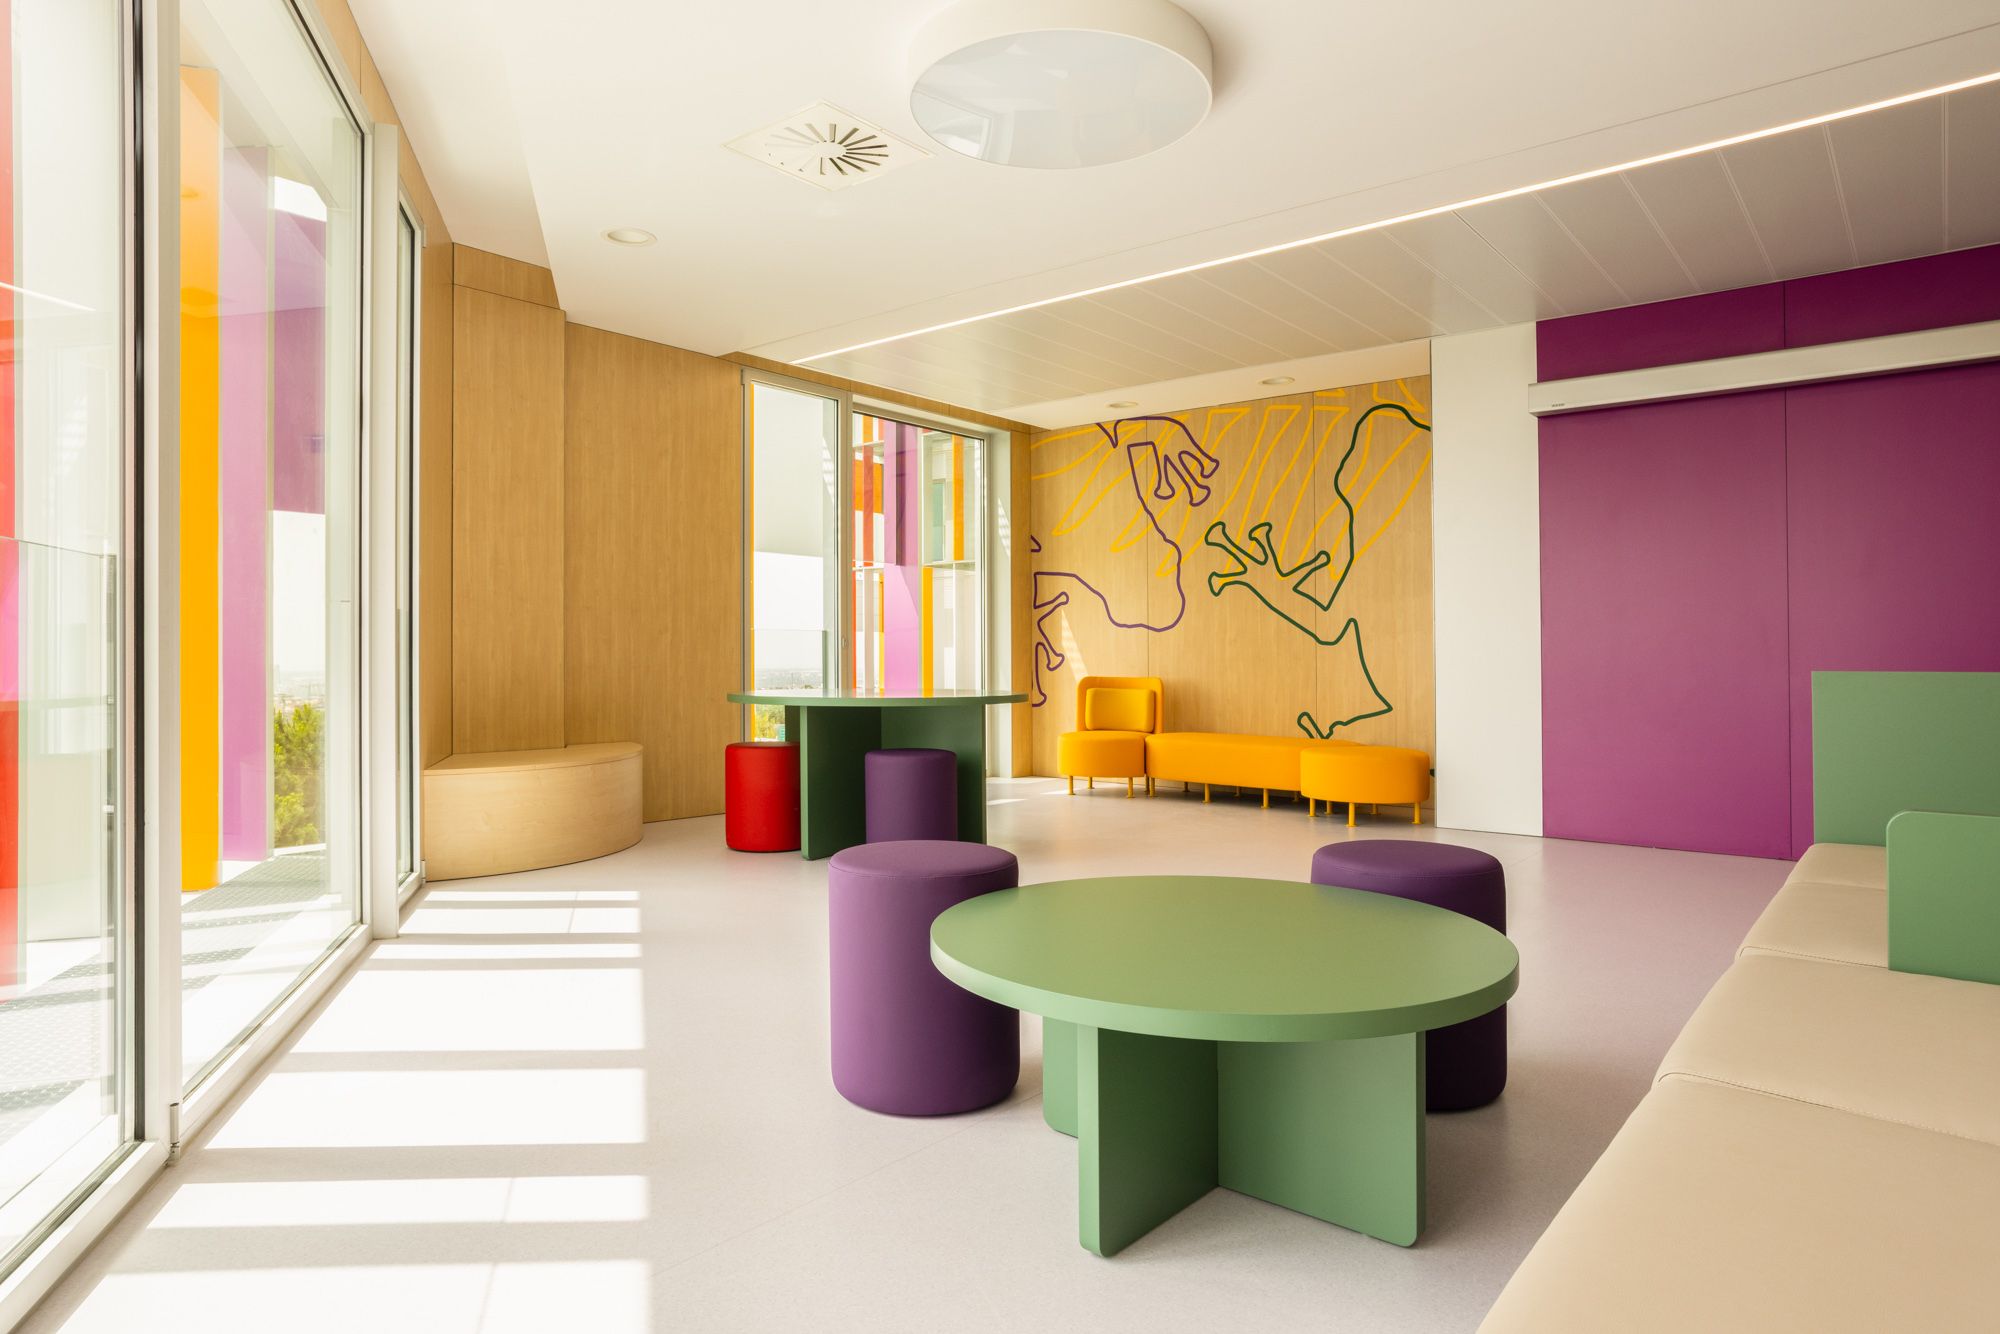 图片[6]|巴塞罗那癌症儿科中心|ART-Arrakis | 建筑室内设计的创新与灵感